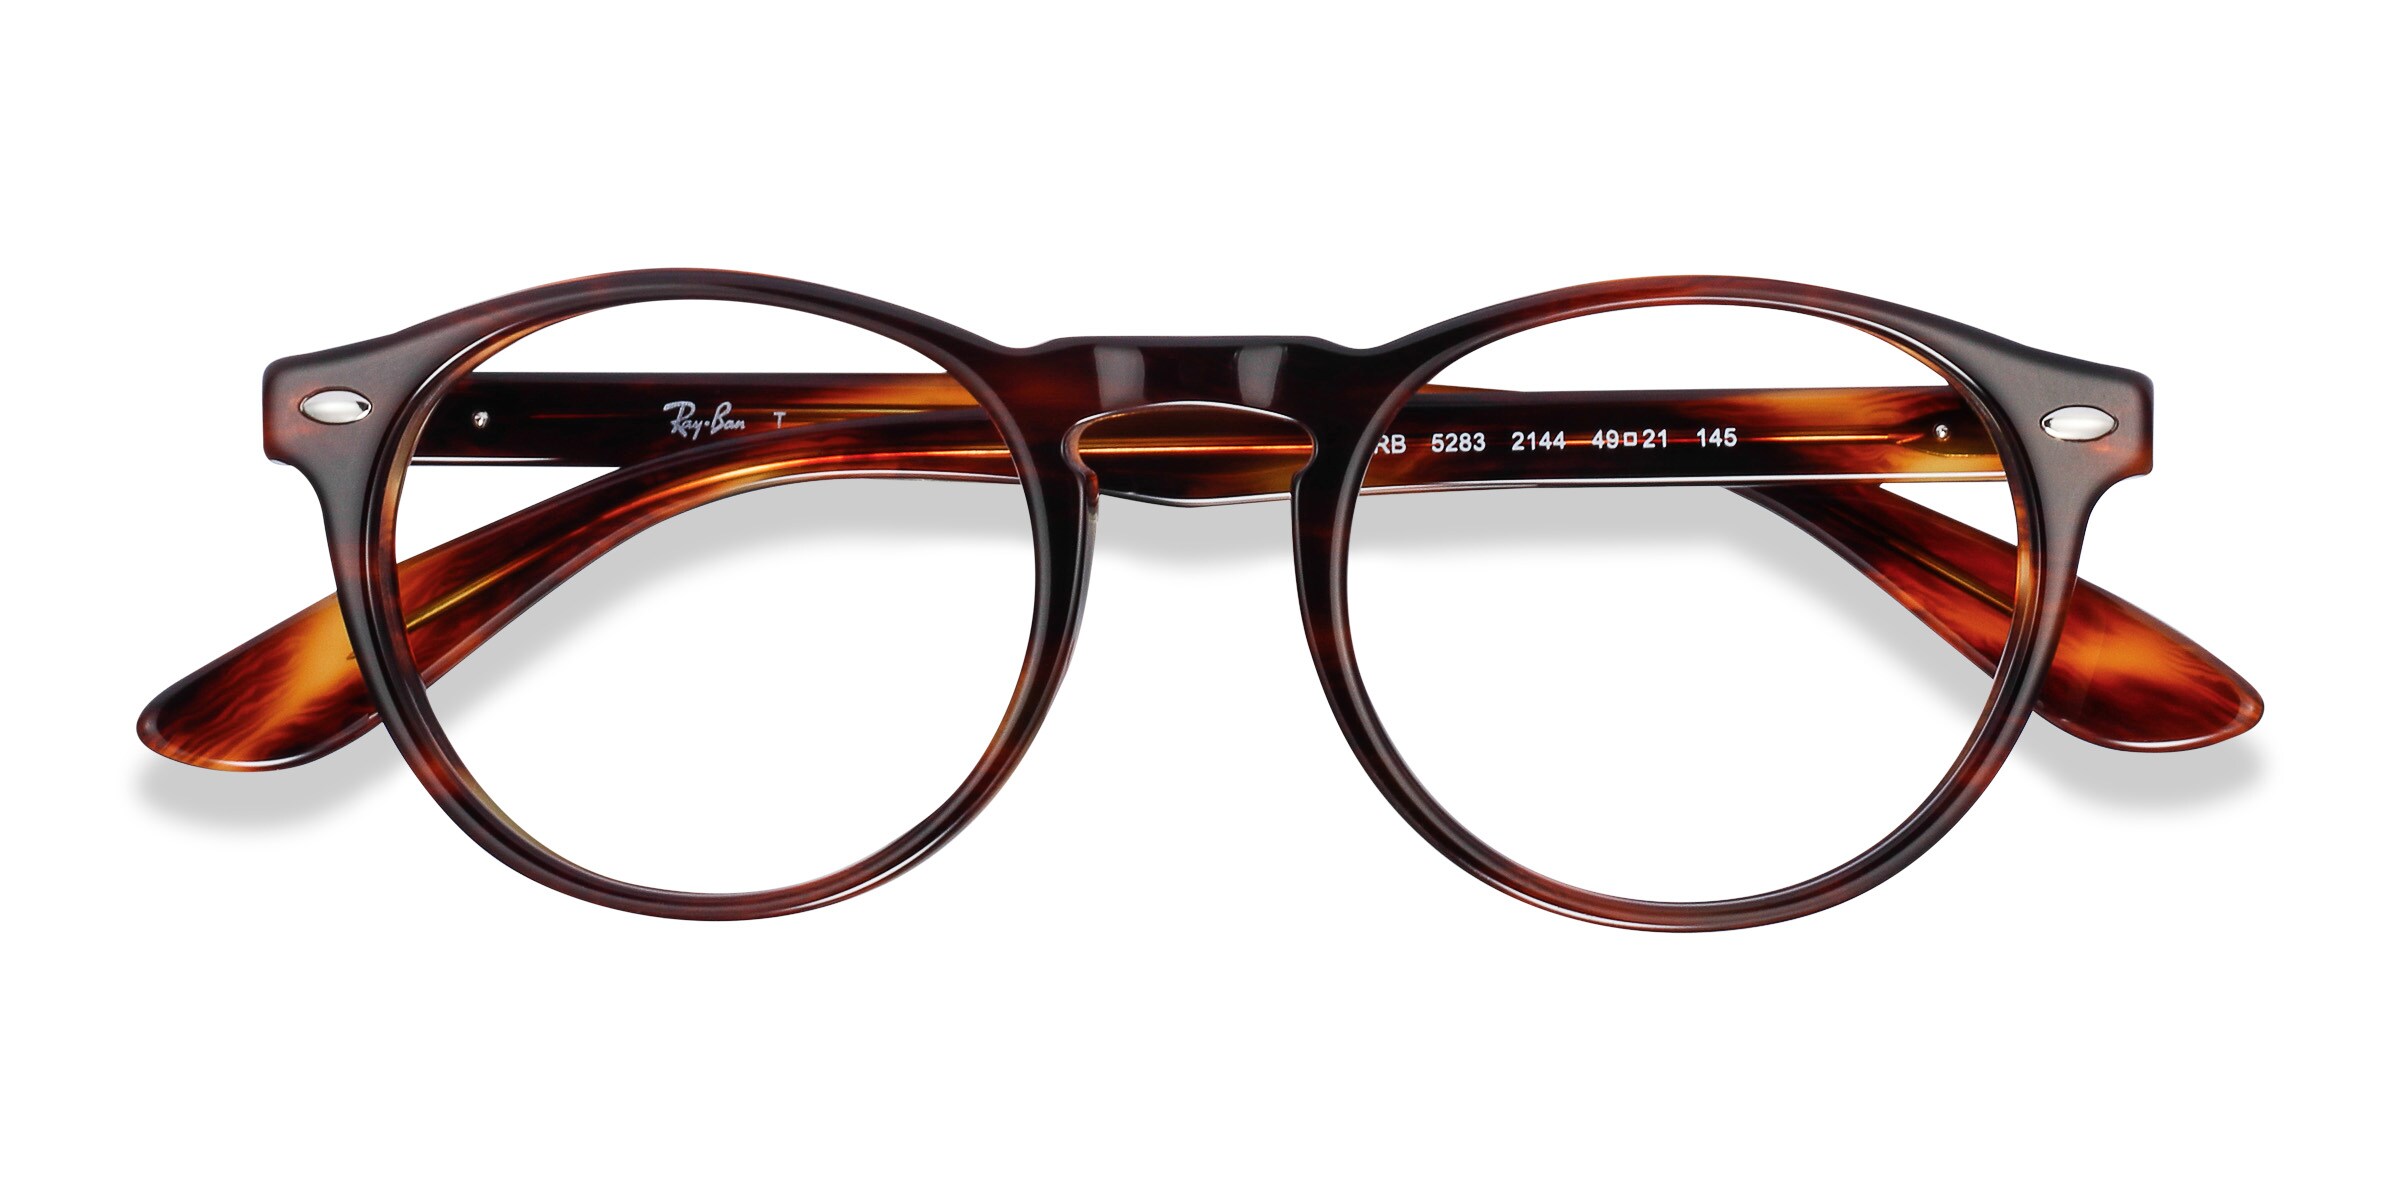 Ray-Ban RB5283 - Round Warm Tortoise Frame Eyeglasses | Eyebuydirect